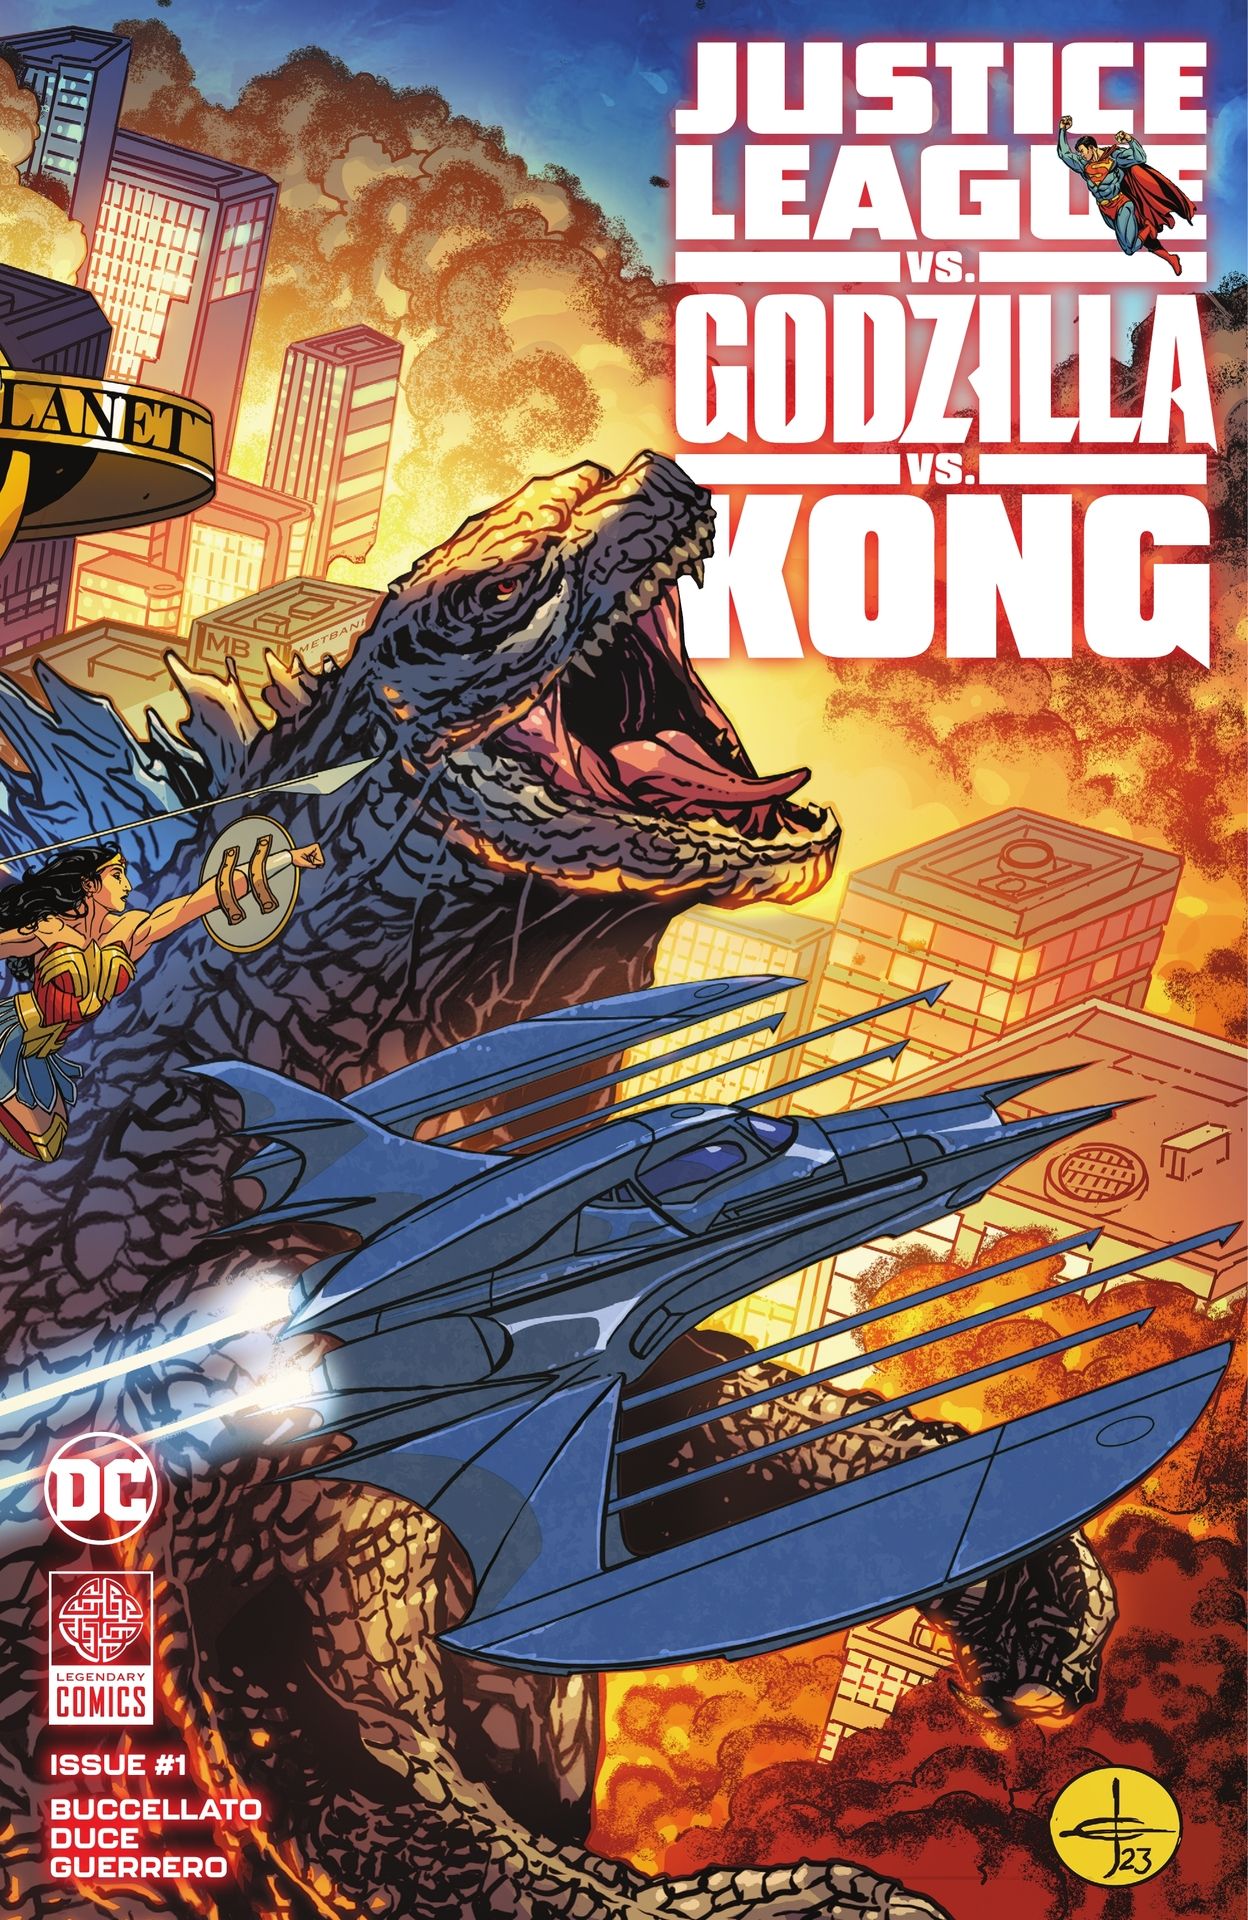 Godzilla vs kong vs justice league read online